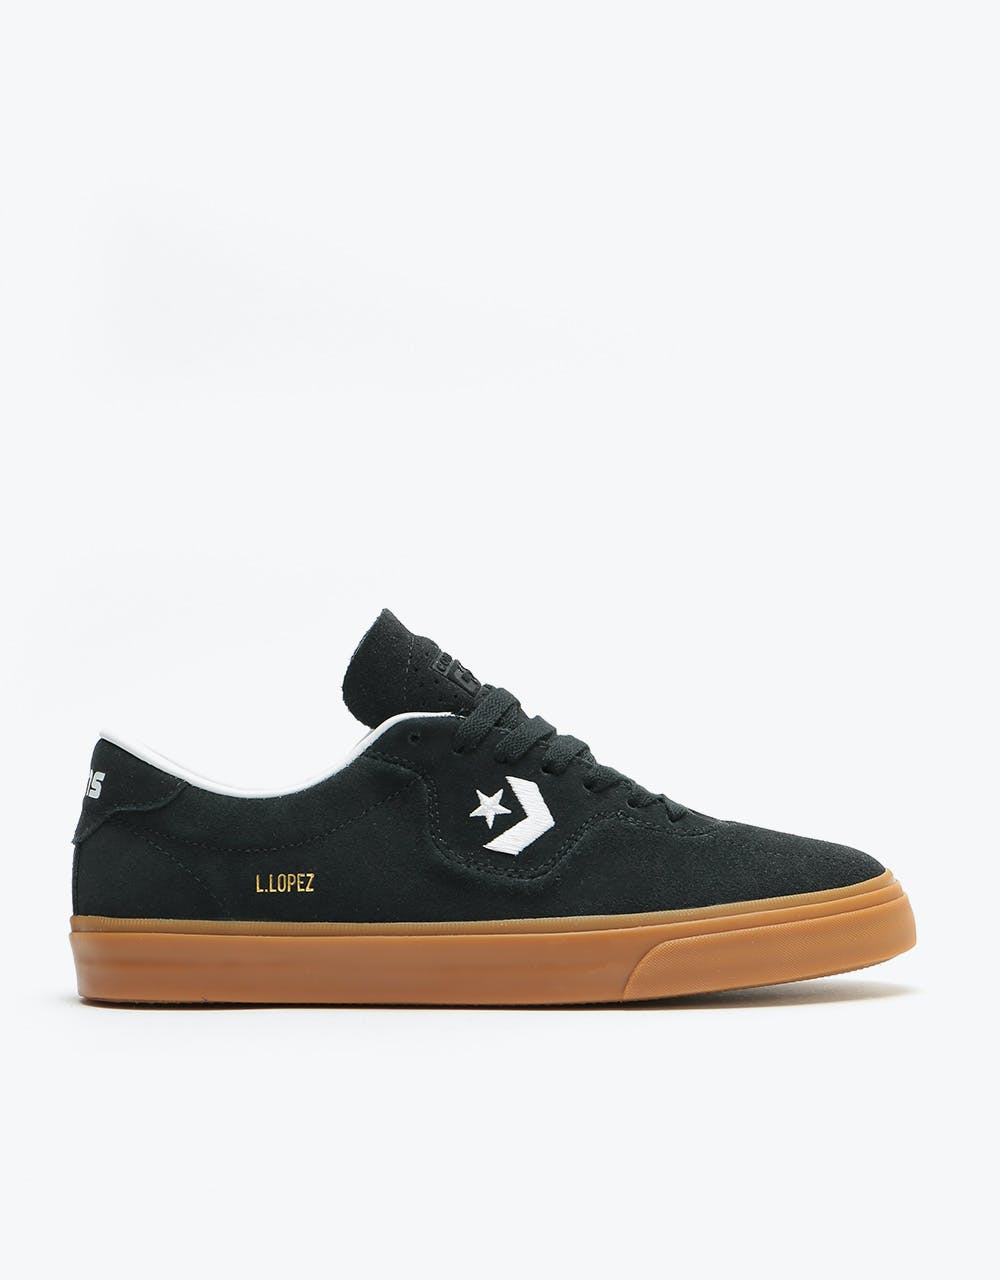 Converse Louie Lopez Pro Ox Skate Shoes - Black/White/Gum